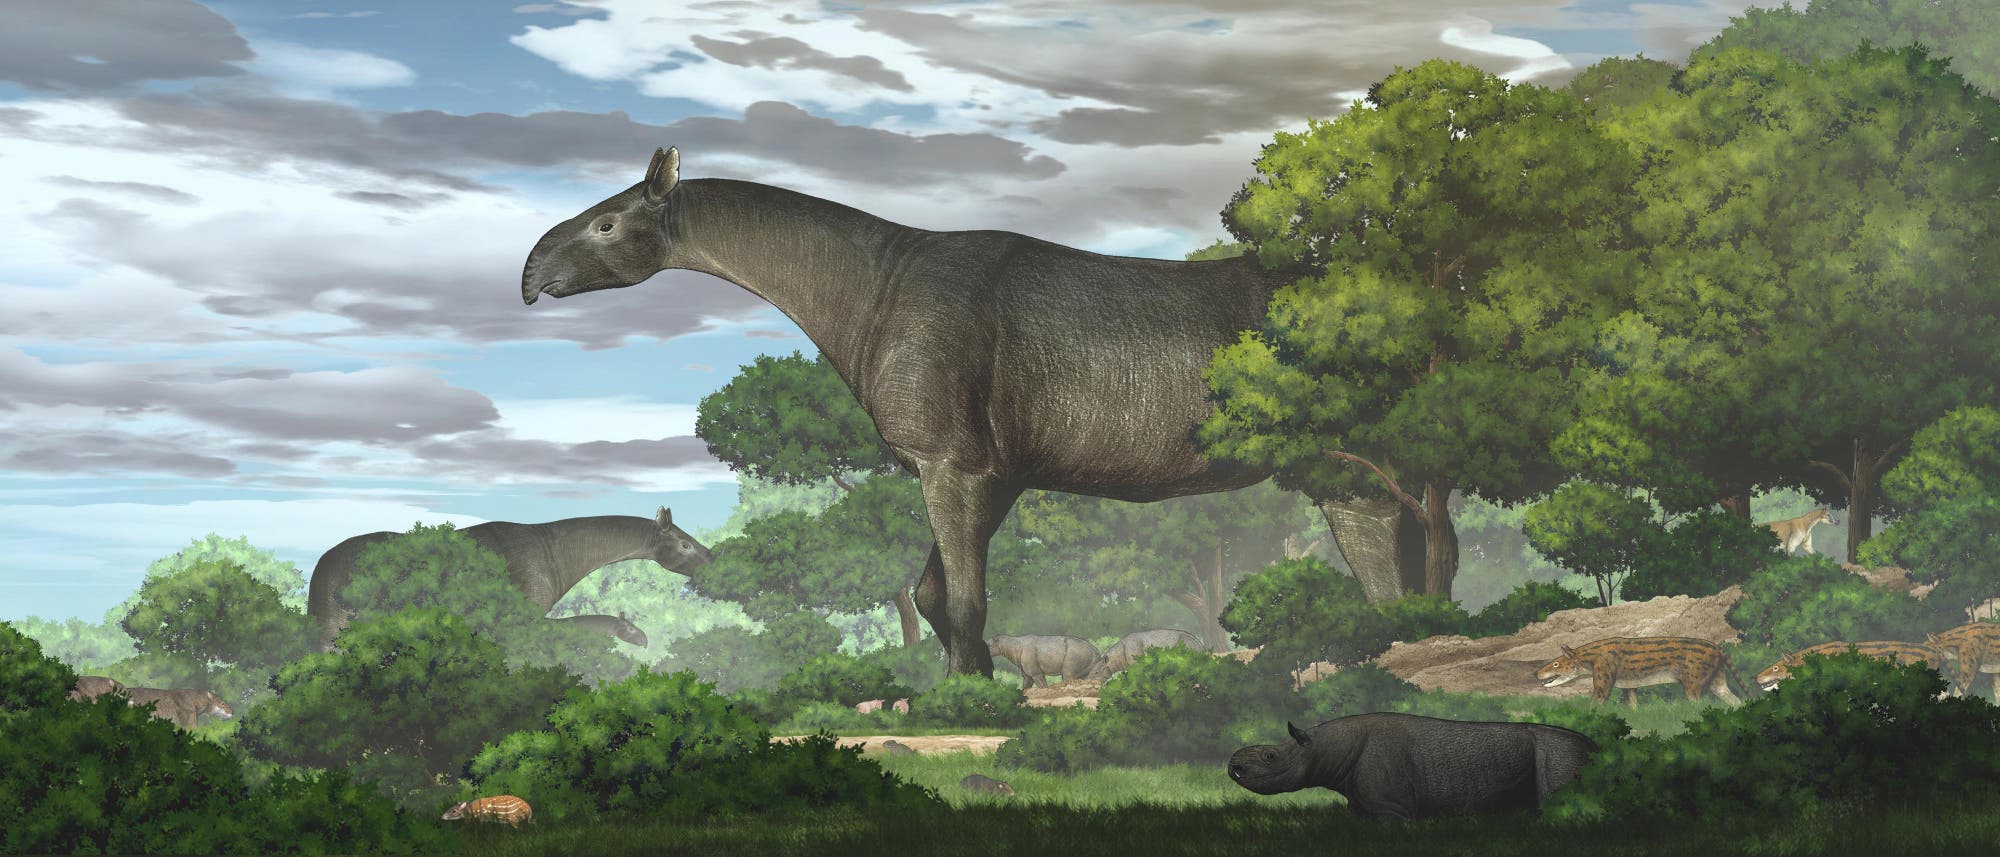 Riesennashörner der Gattung Paraceratherium in ihrem Lebensraum